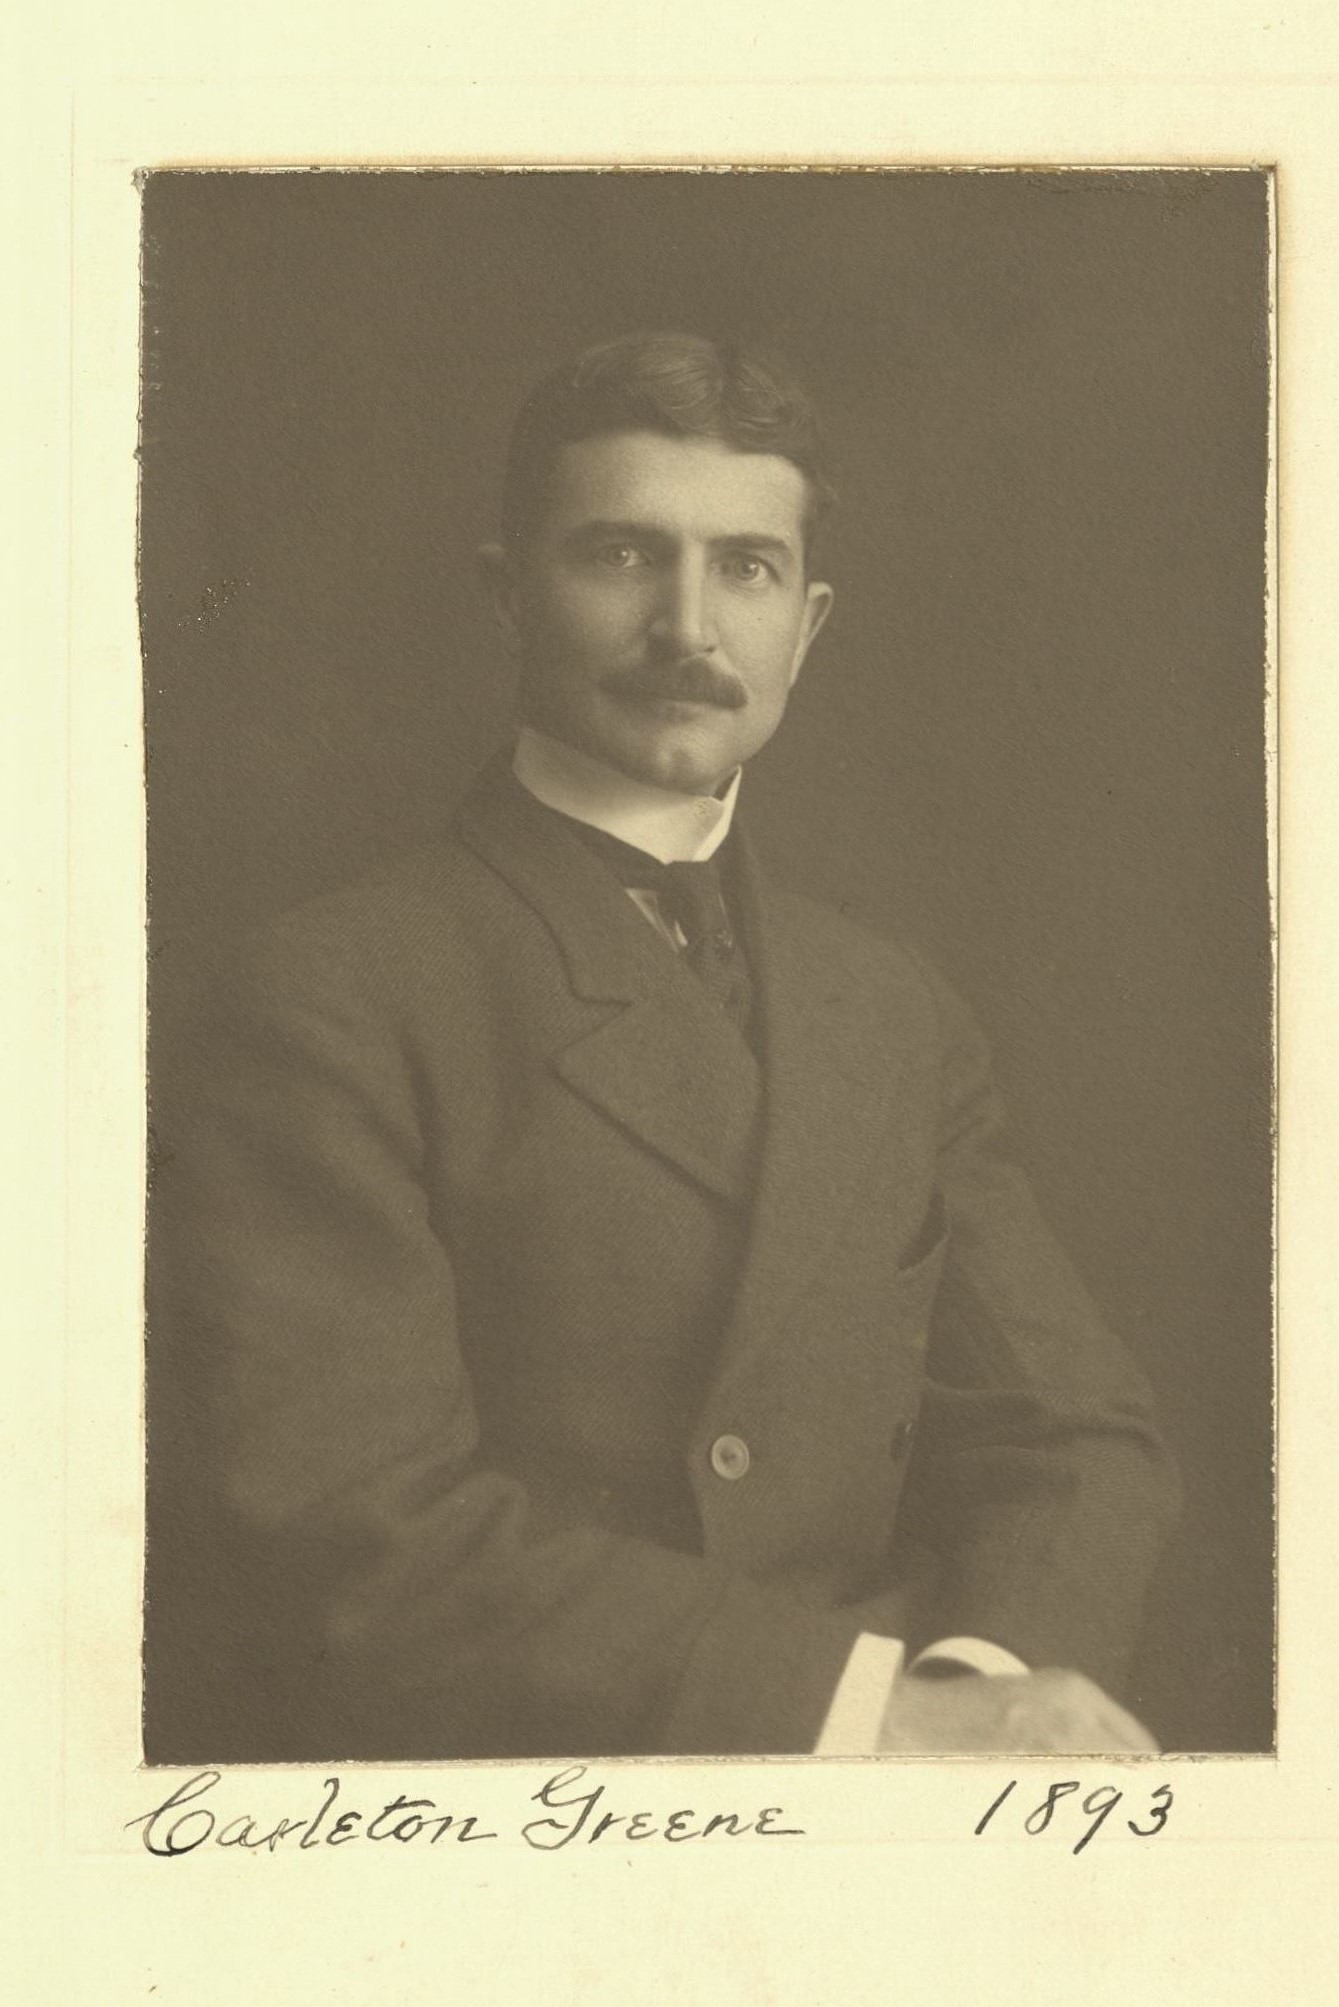 Member portrait of Carleton Greene